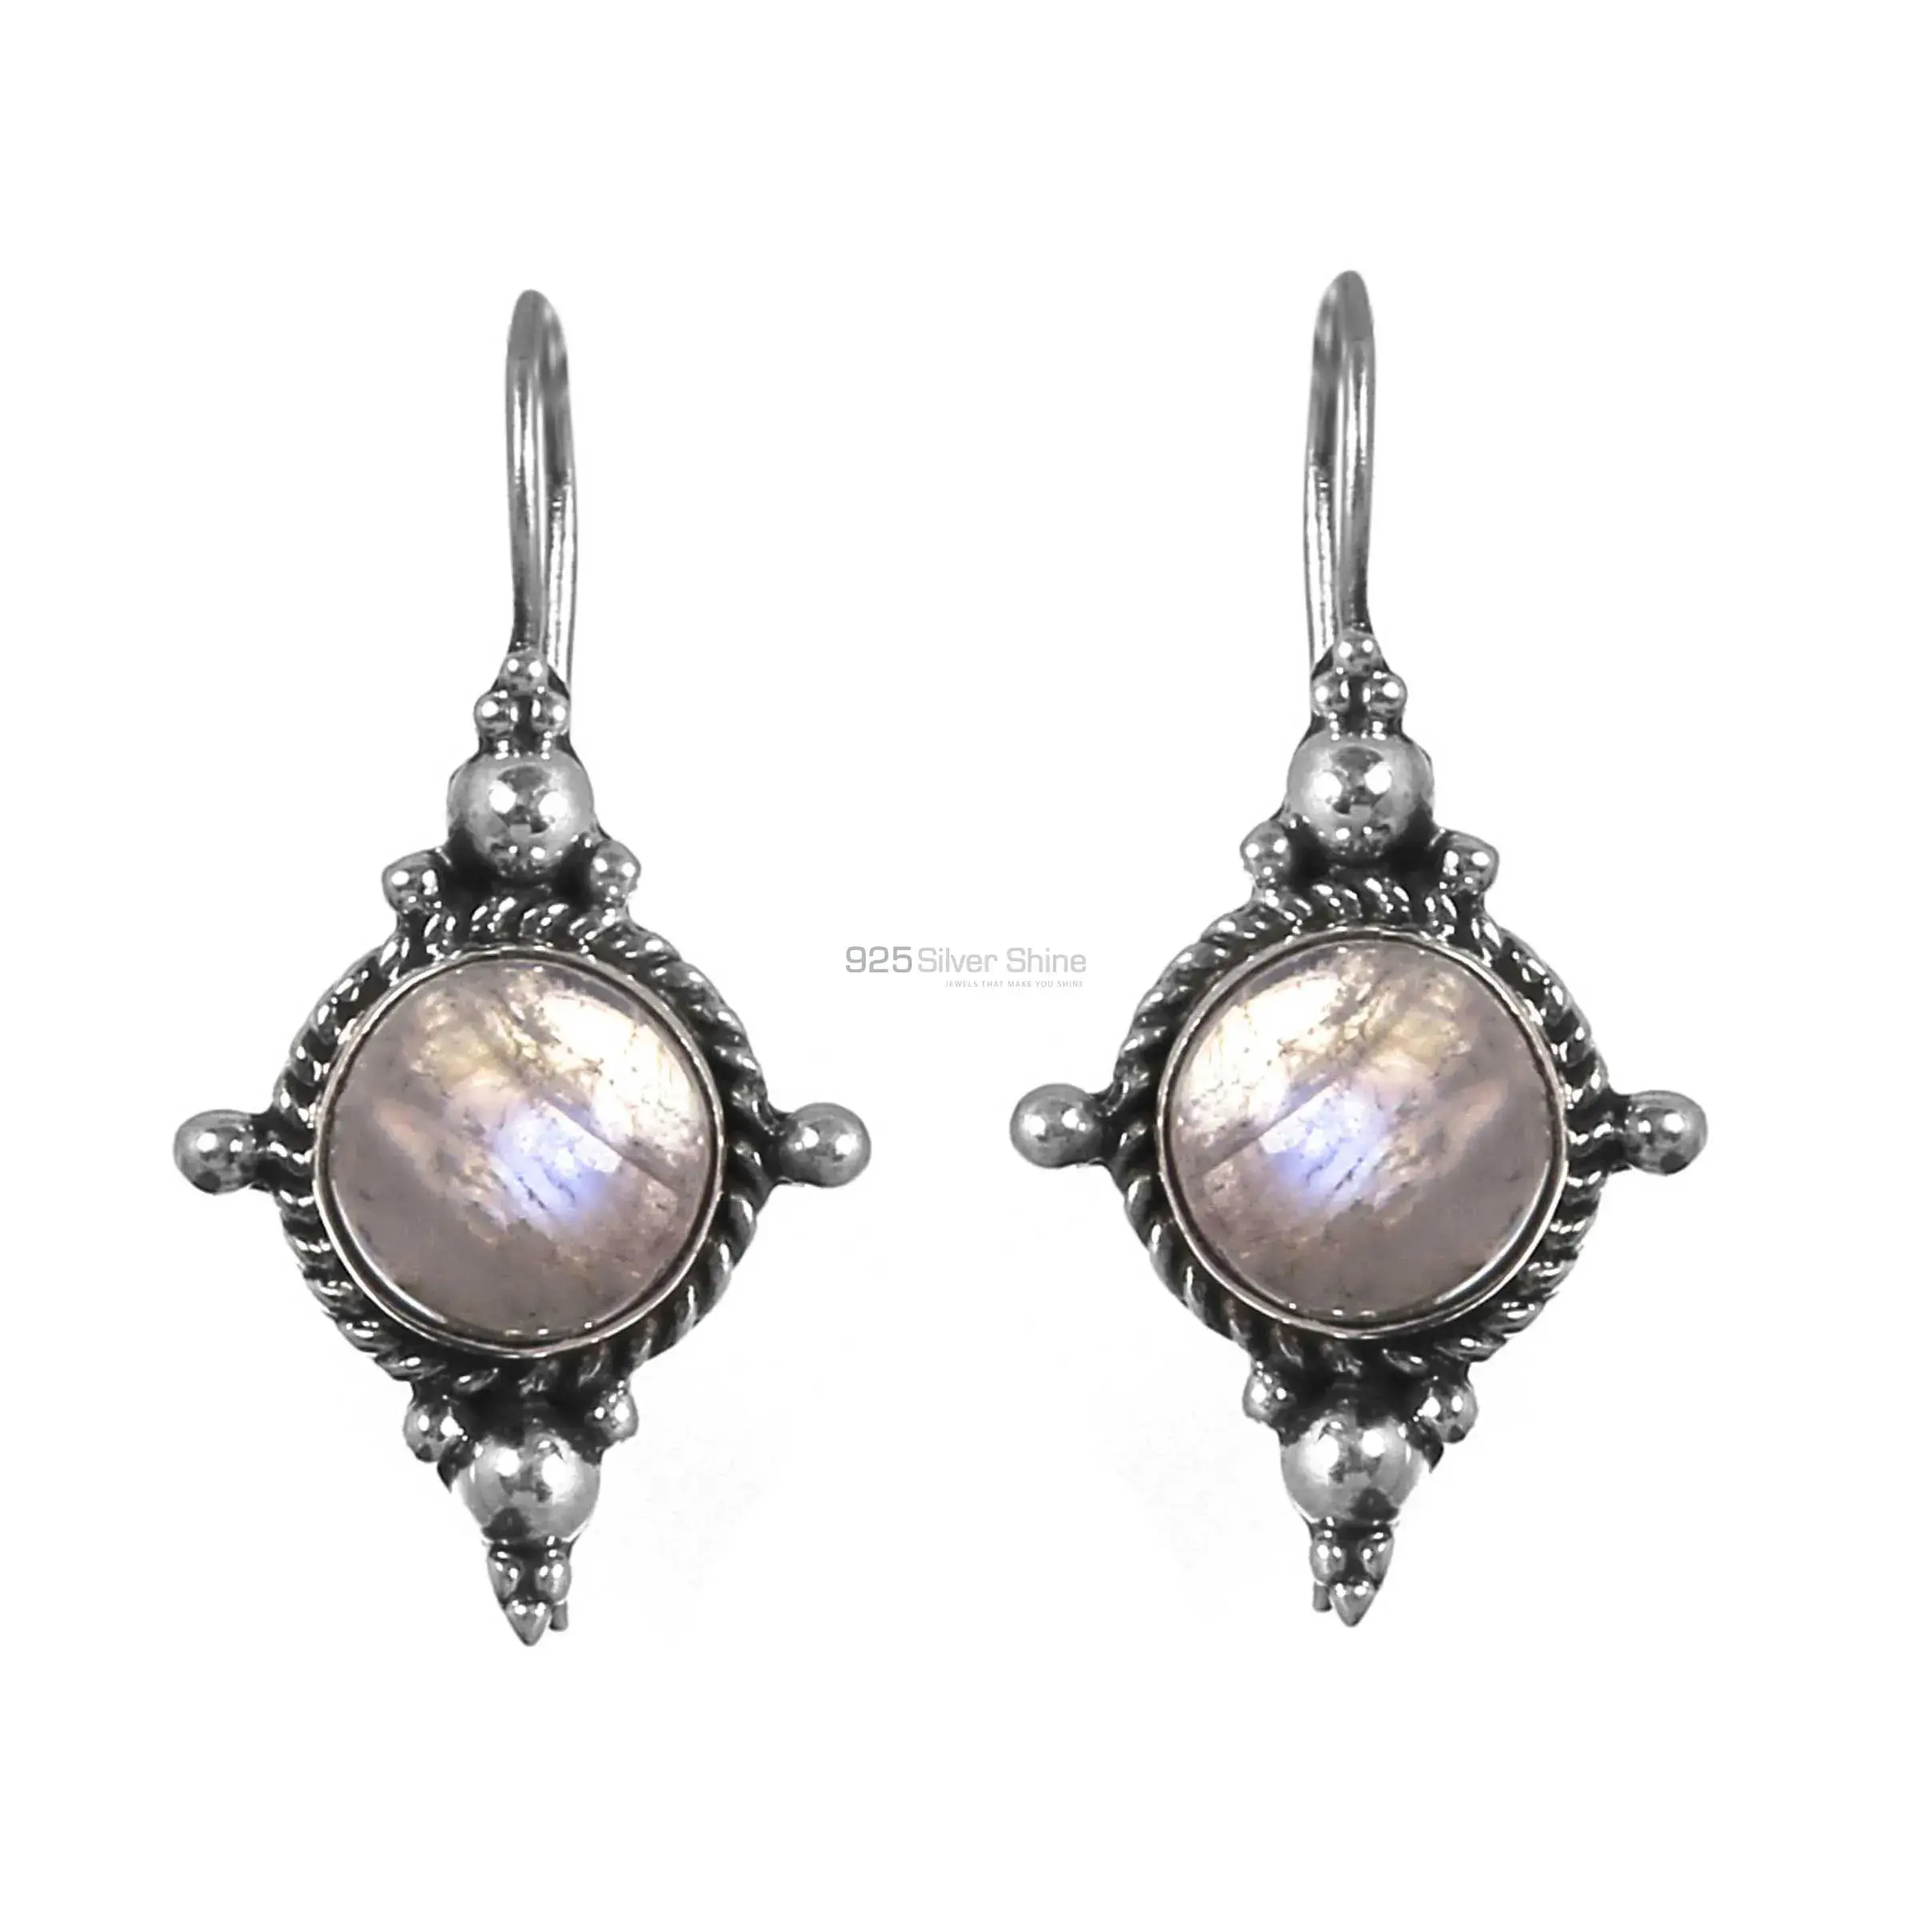 Wholesale Sterling Silver Earrings In Labradorite Gemstone Jewelry 925SE220